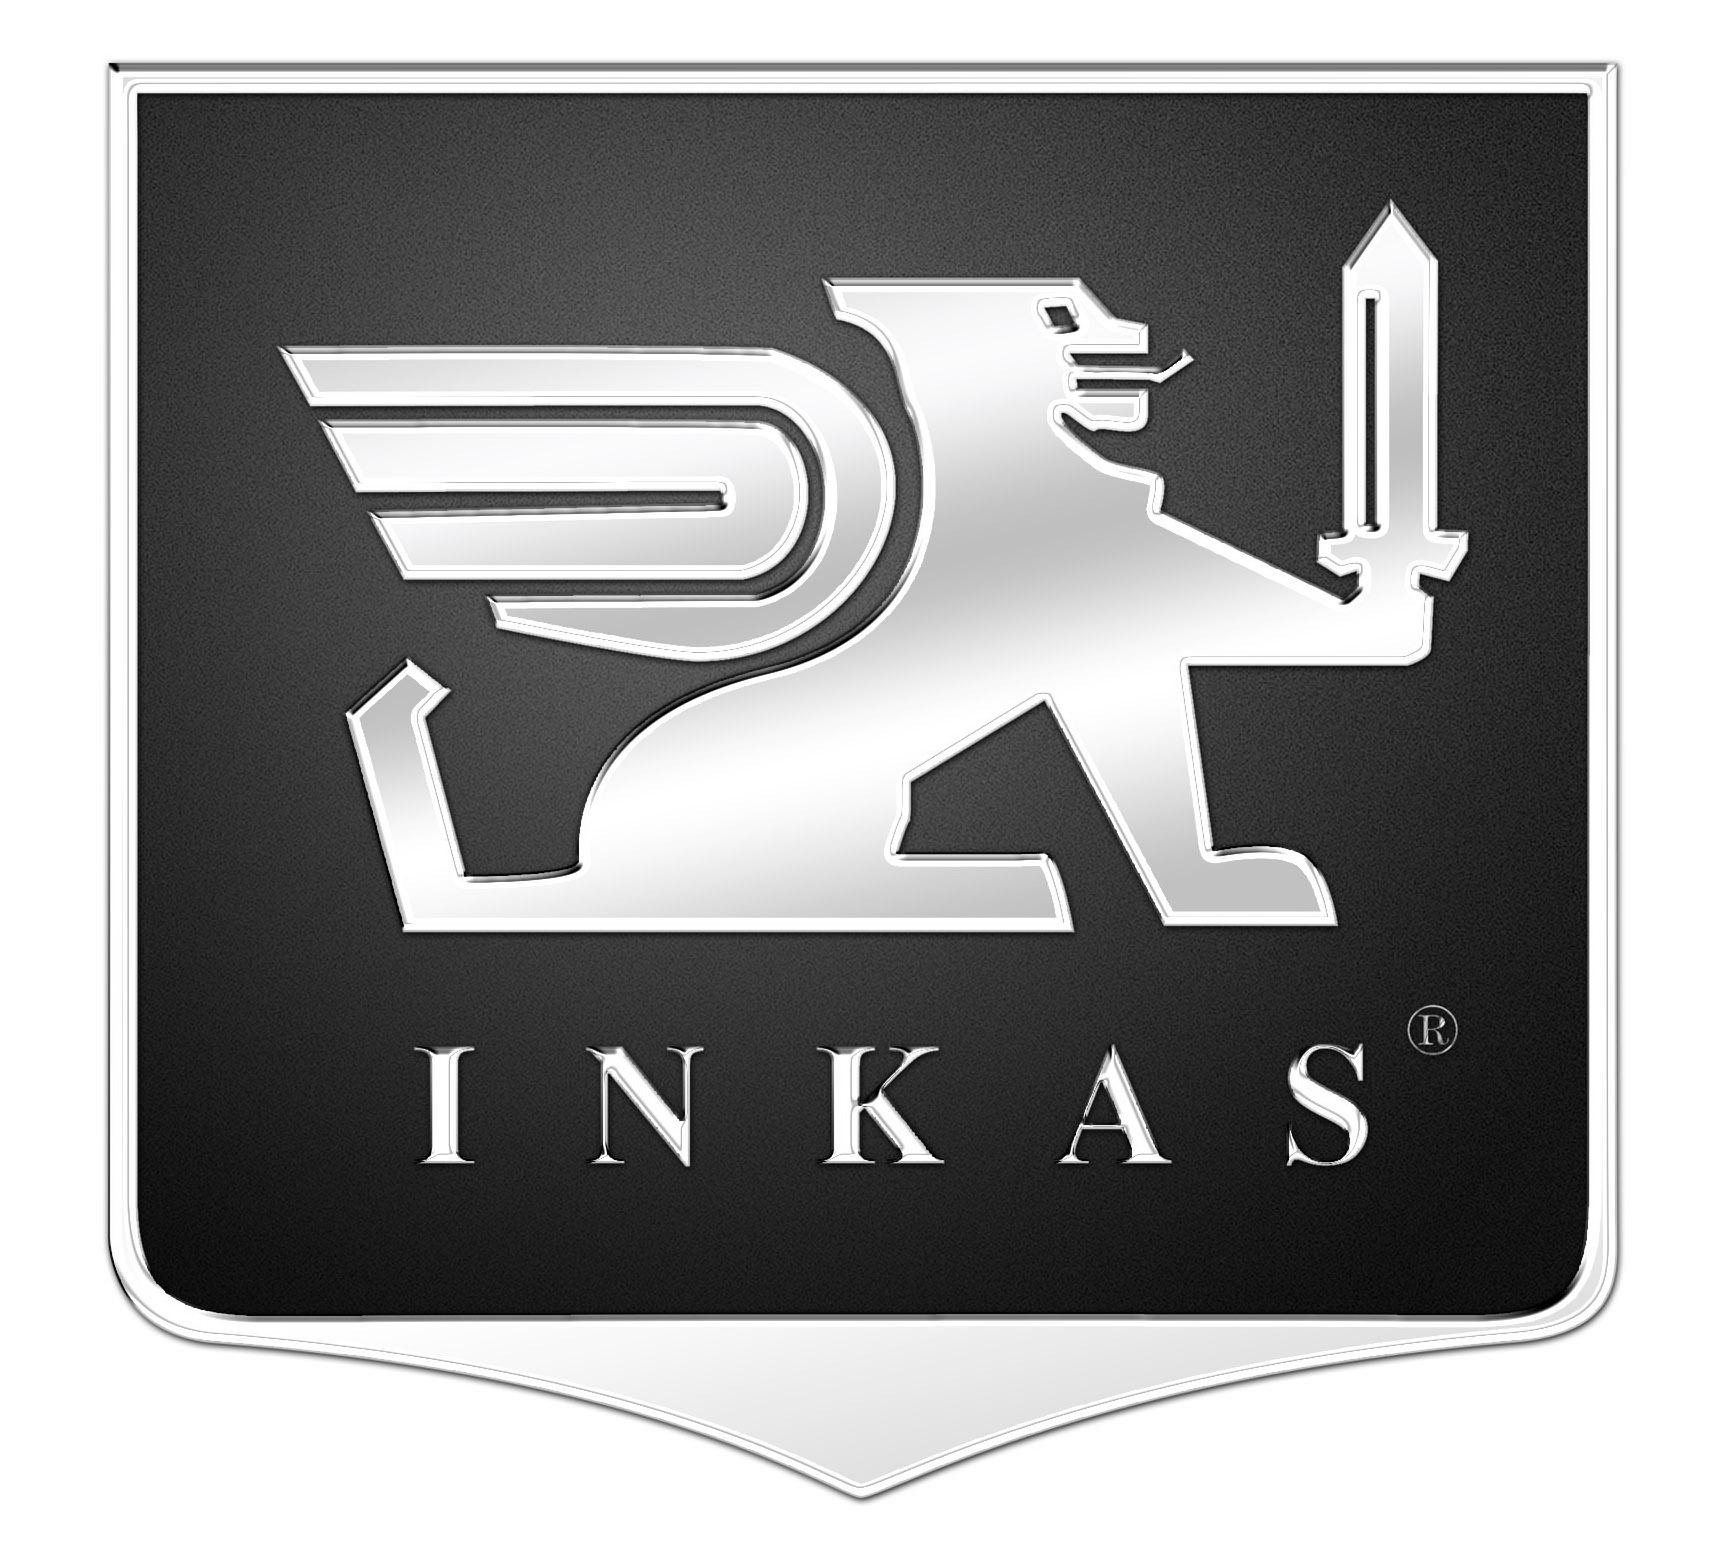 Trademark Logo INKAS